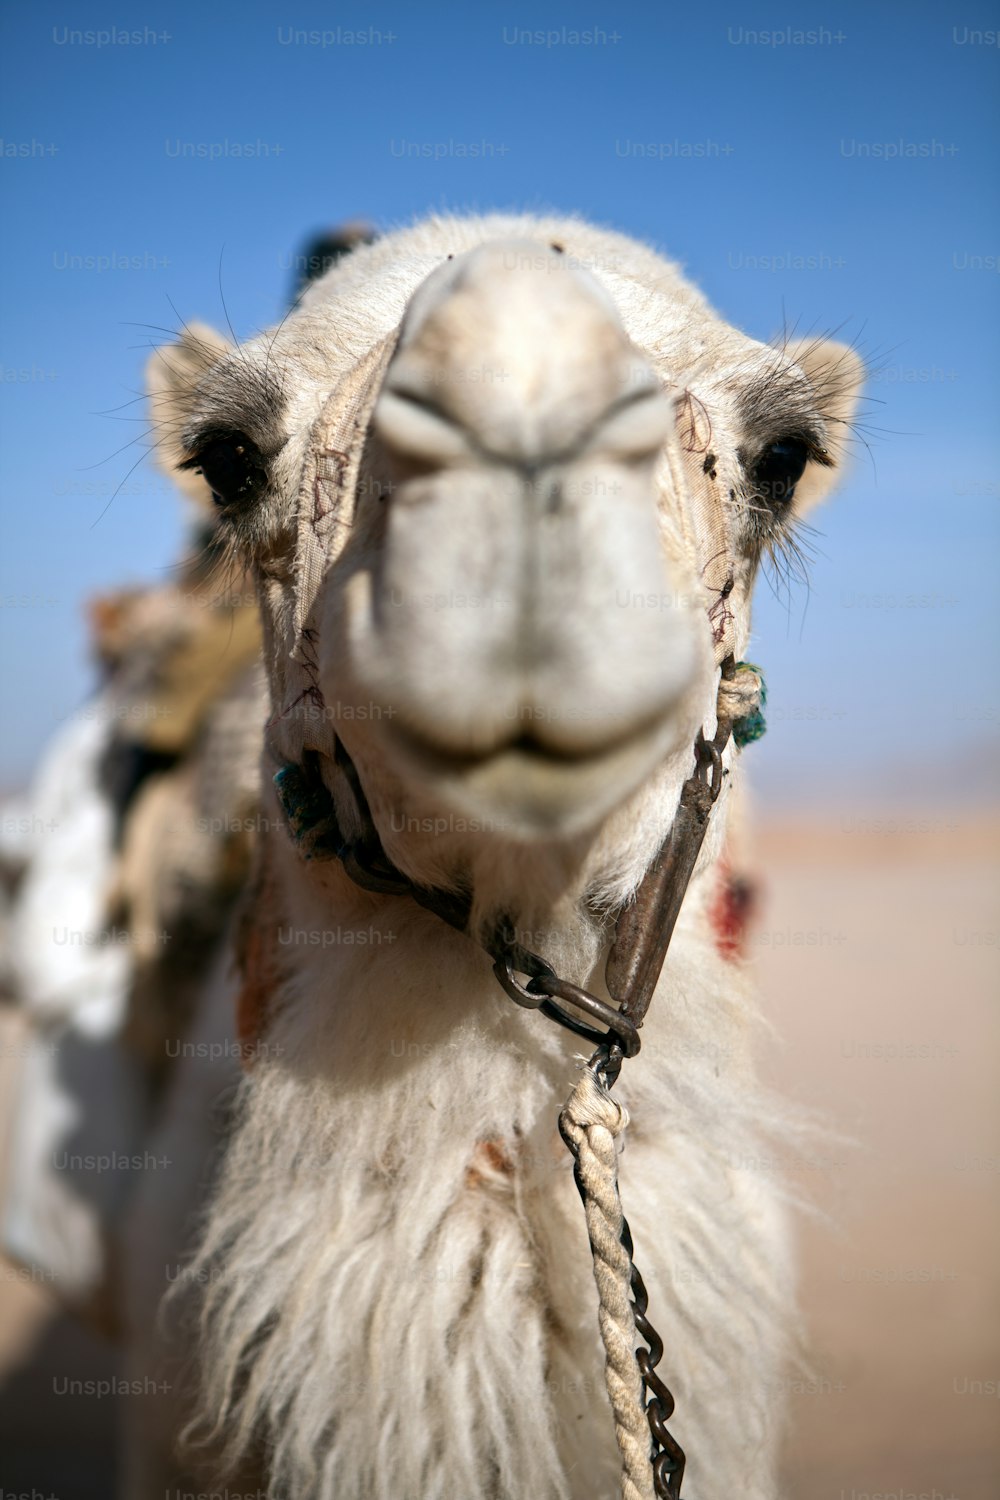 Testa di cammello con profondità di campo ridotta